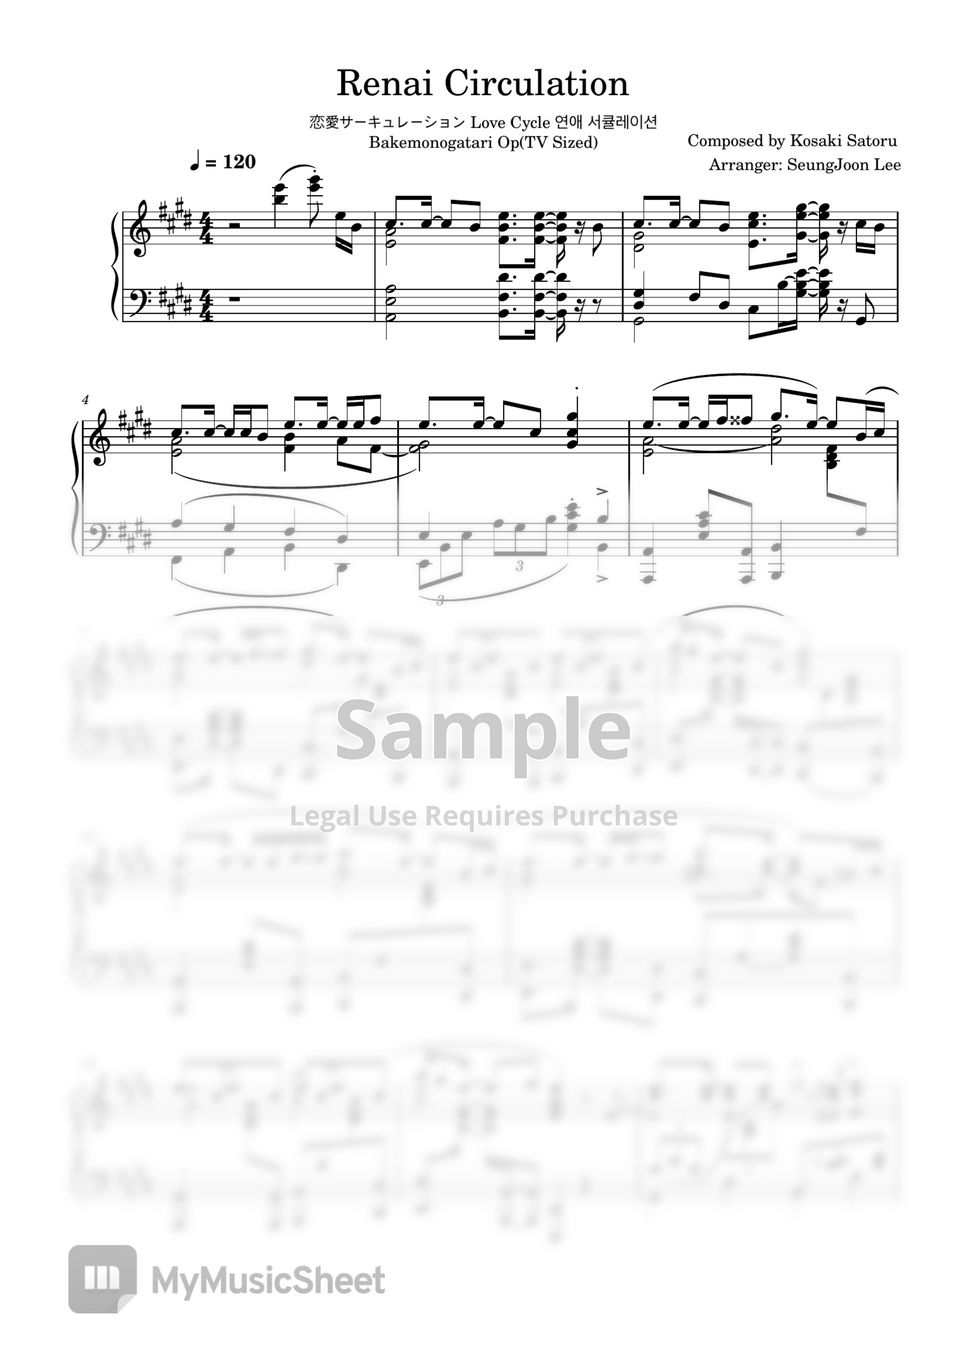 Kosaki Satoru - Renai Circulation (Piano) Sheets by SeungJoon Lee